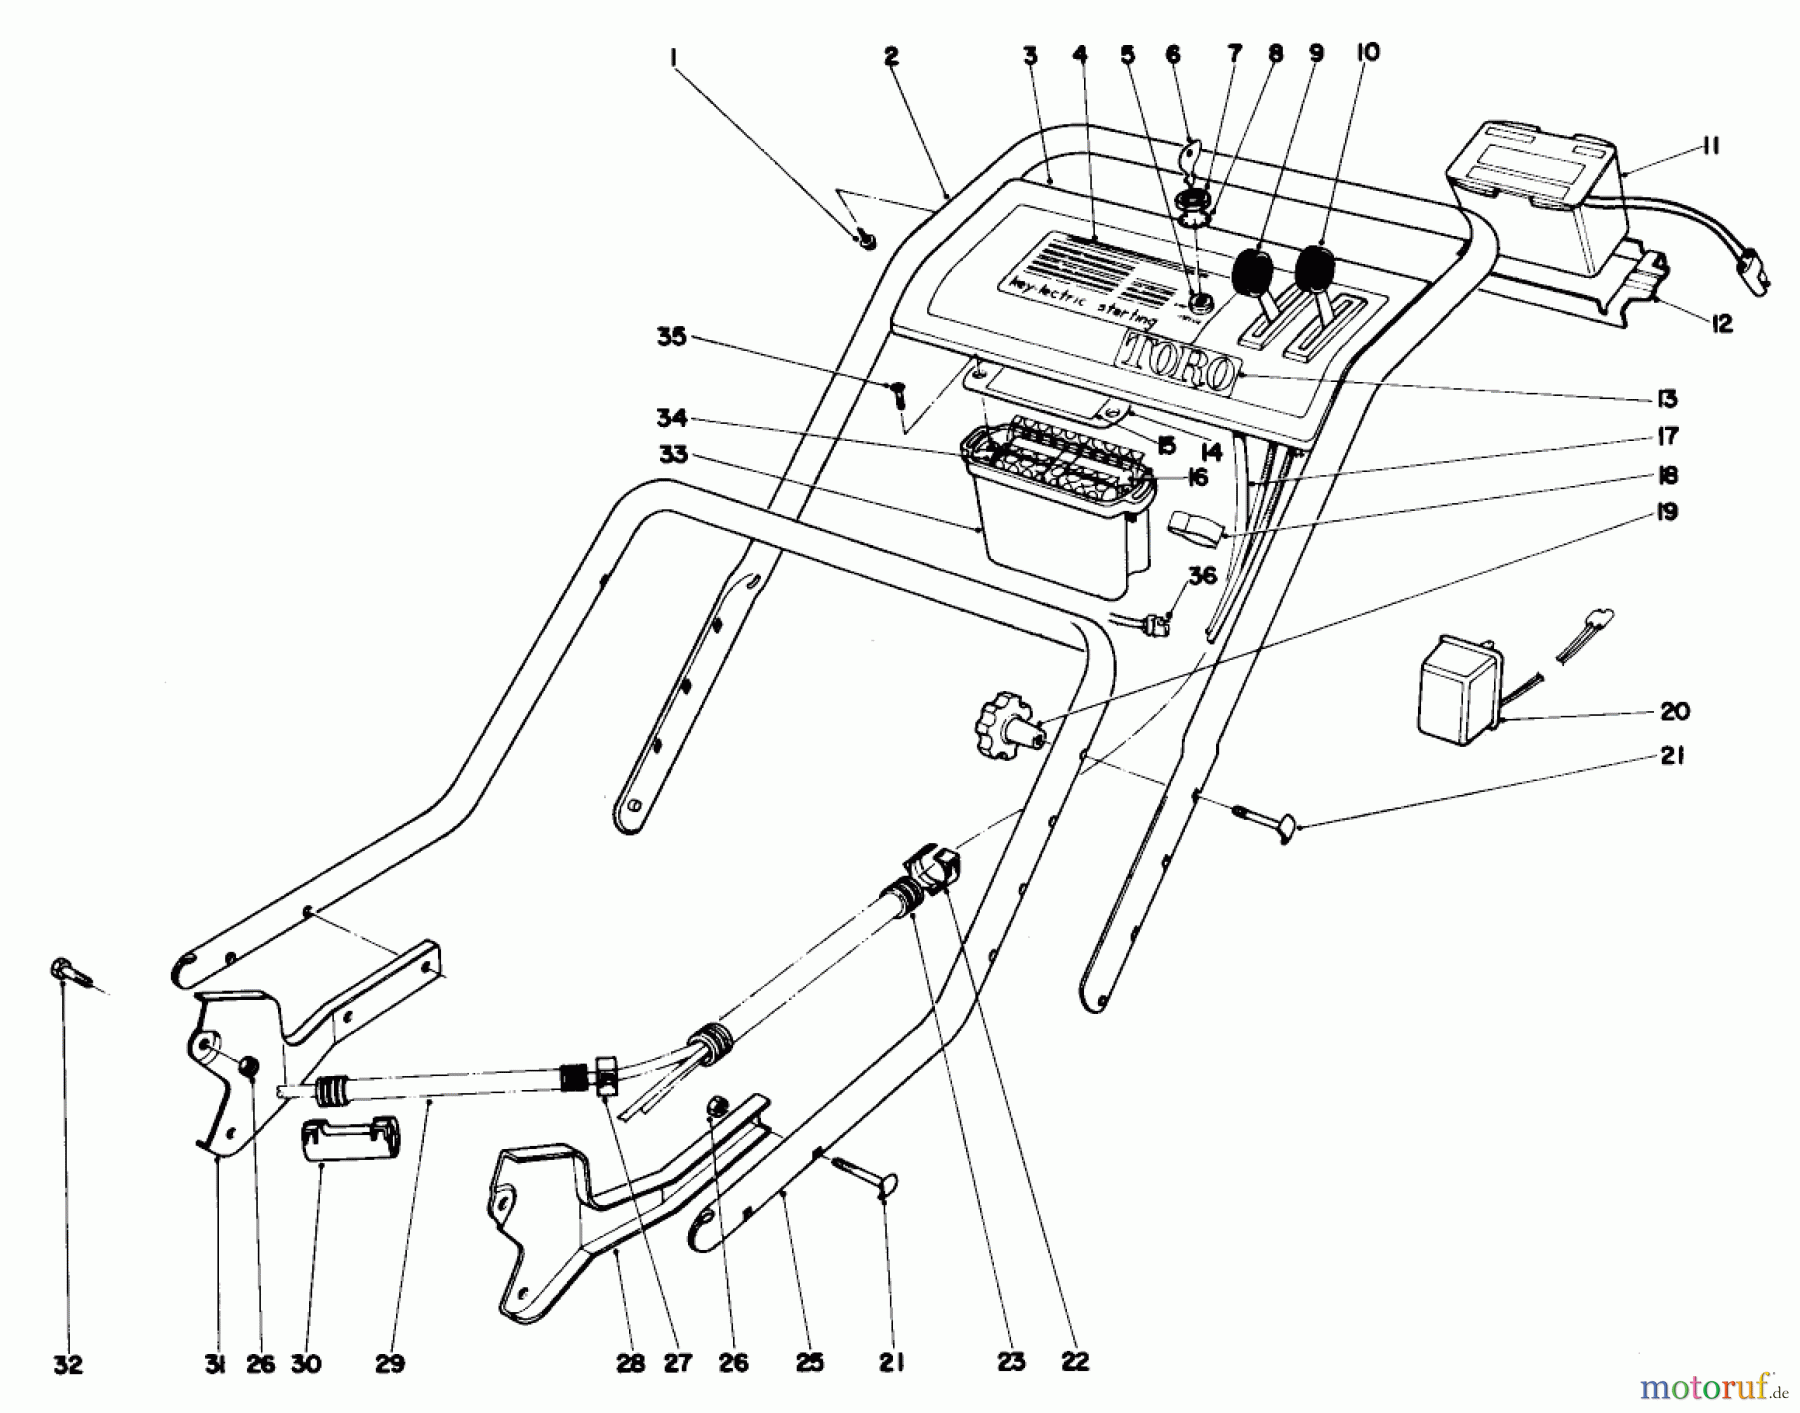  Toro Neu Mowers, Walk-Behind Seite 1 20550 - Toro Lawnmower, 1974 (4000001-4999999) HANDLE ASSEMBLY-MODEL NO. 20660